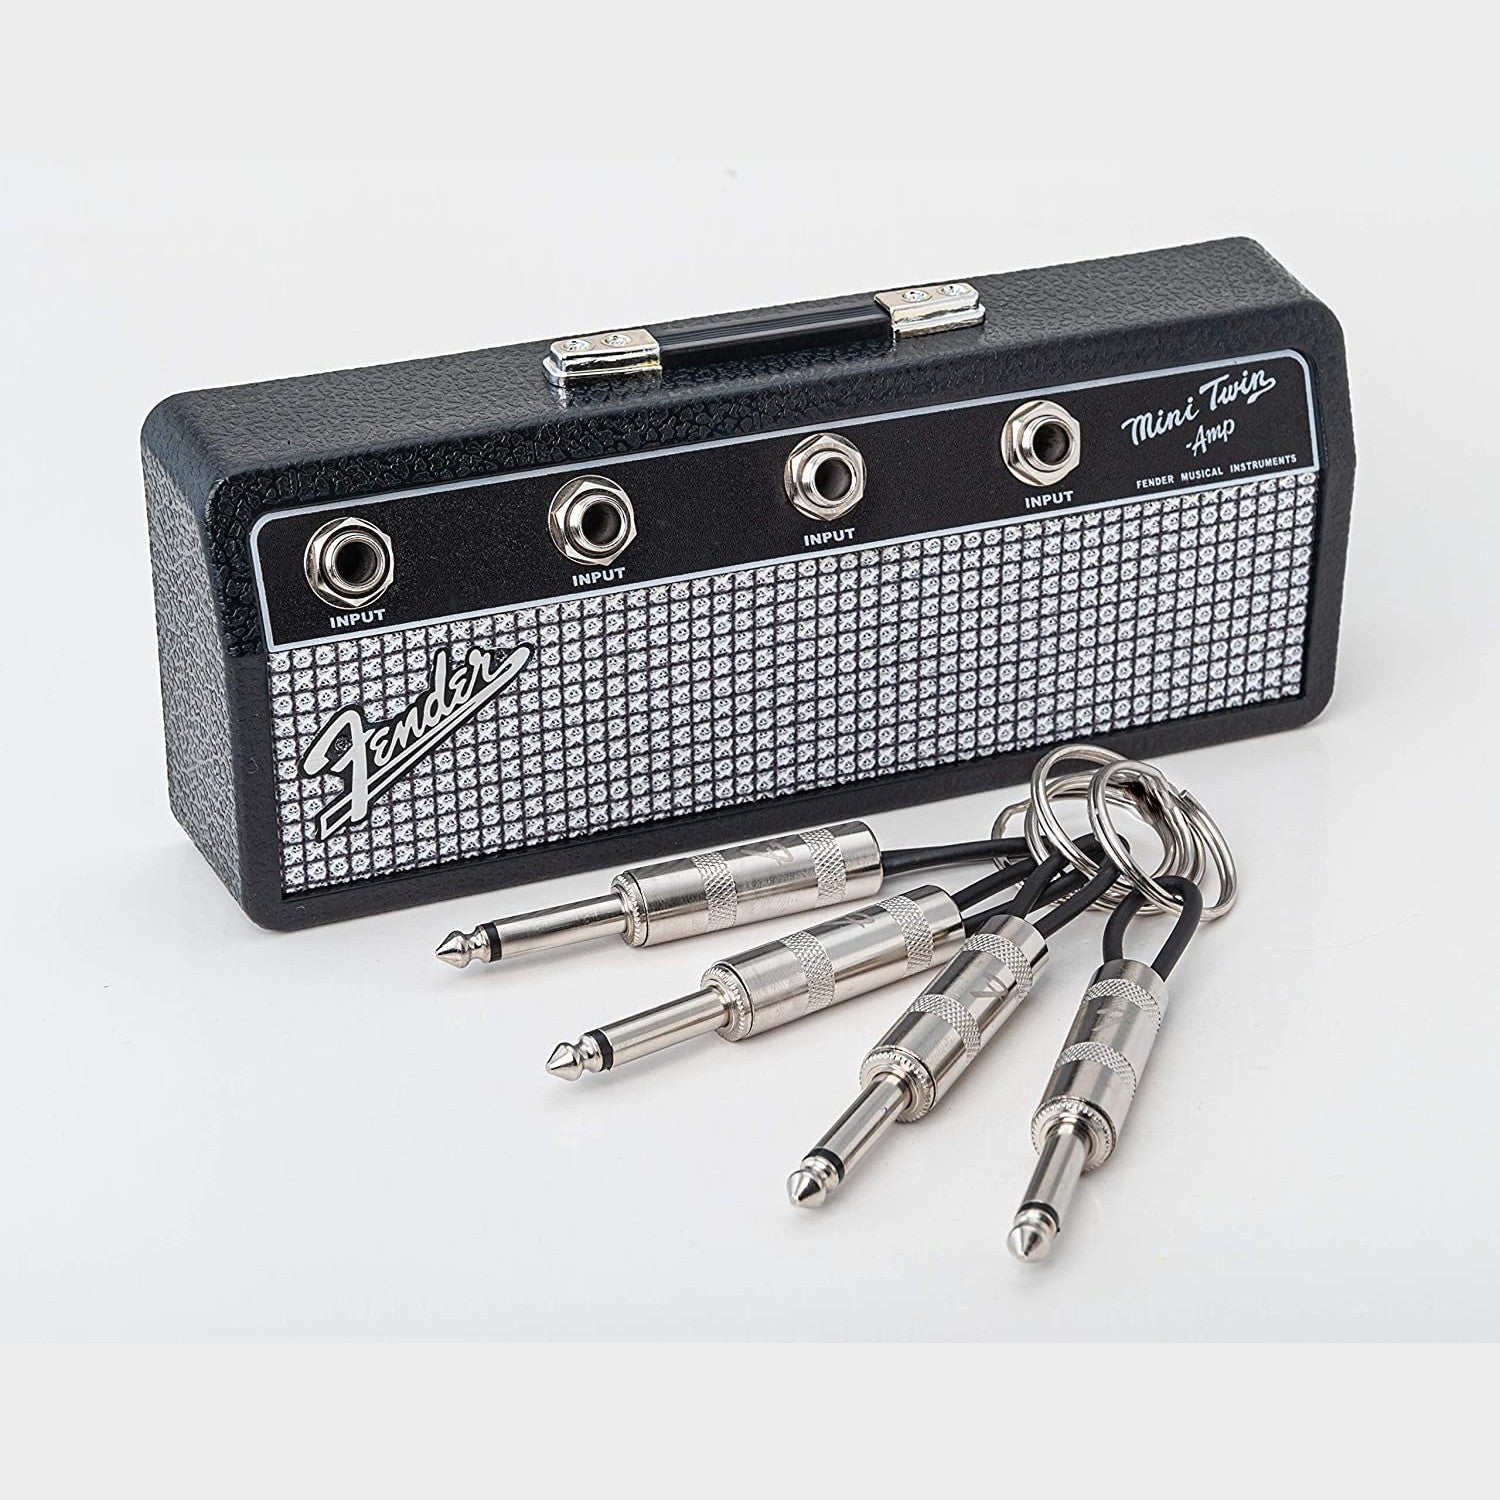 A Fender jack key rack with 4 laser etched Fender guitar plug keychains.